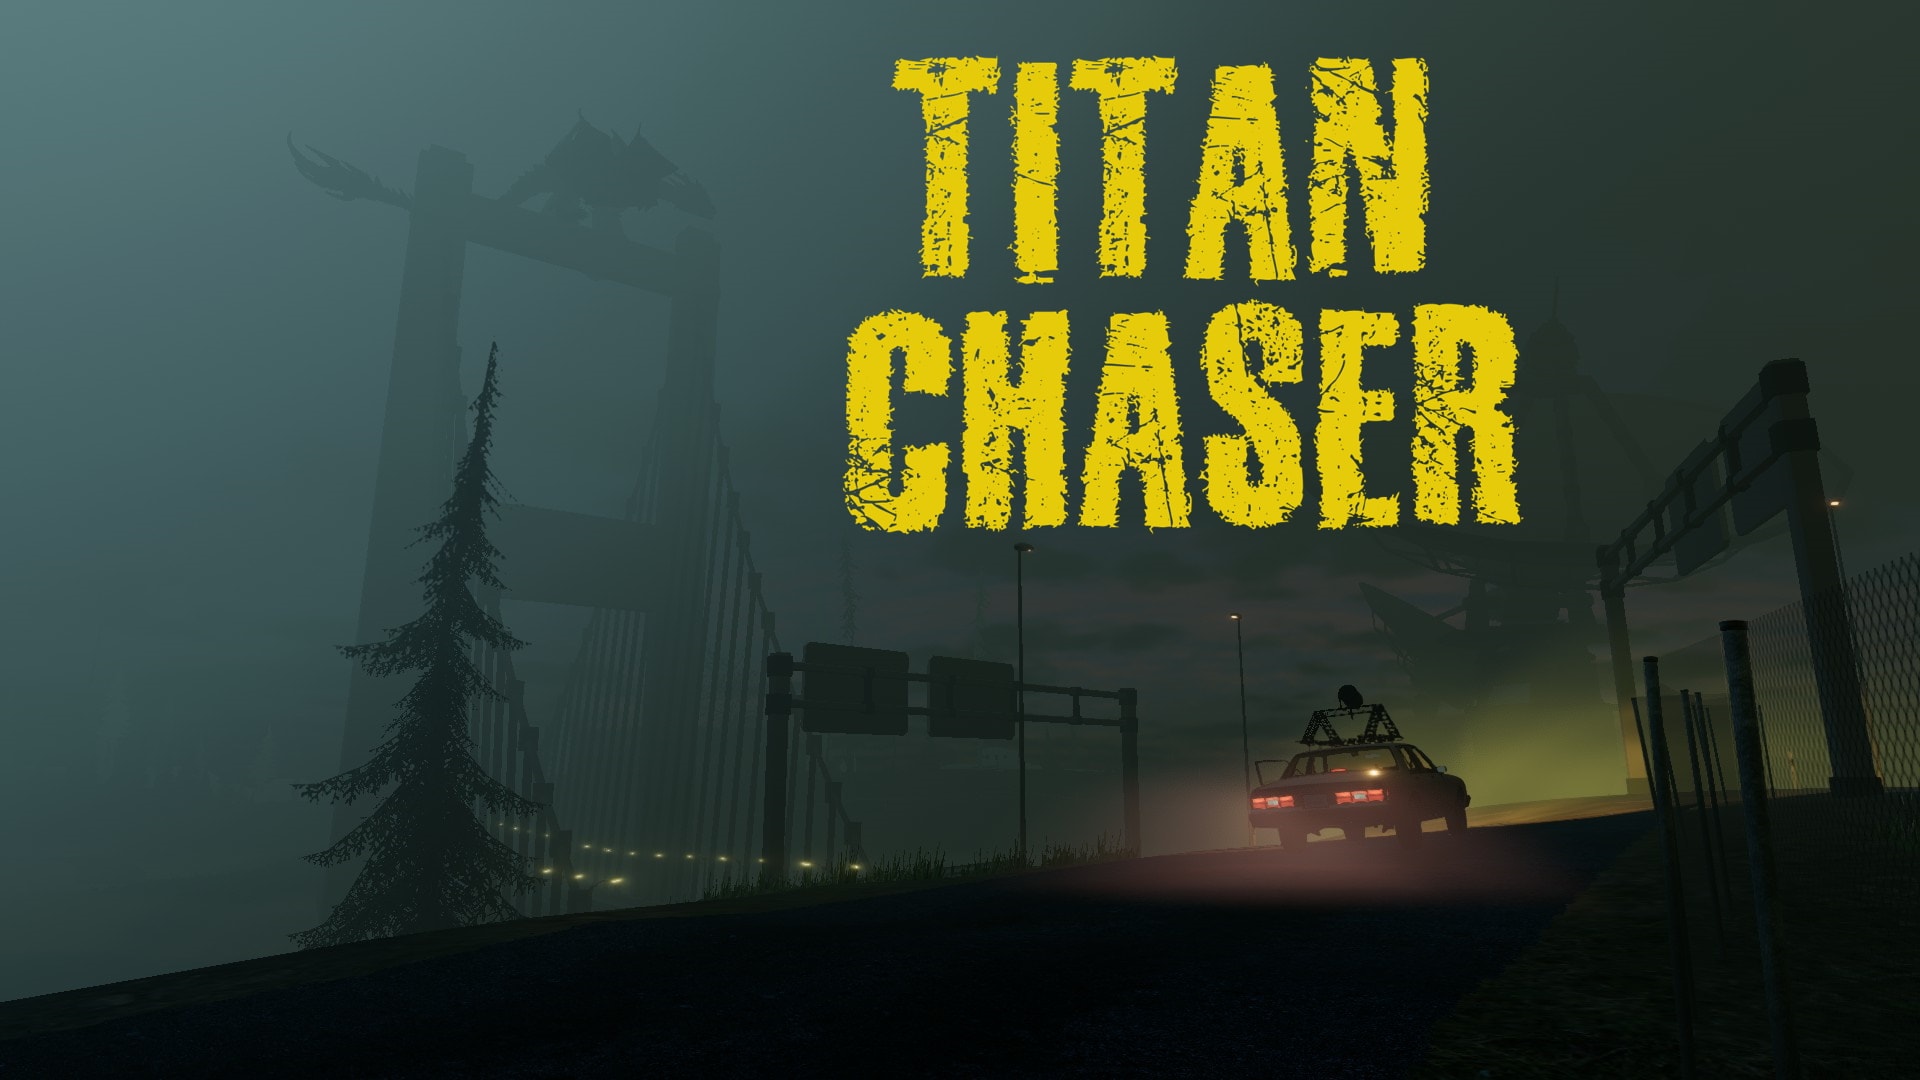 Titan Chaser